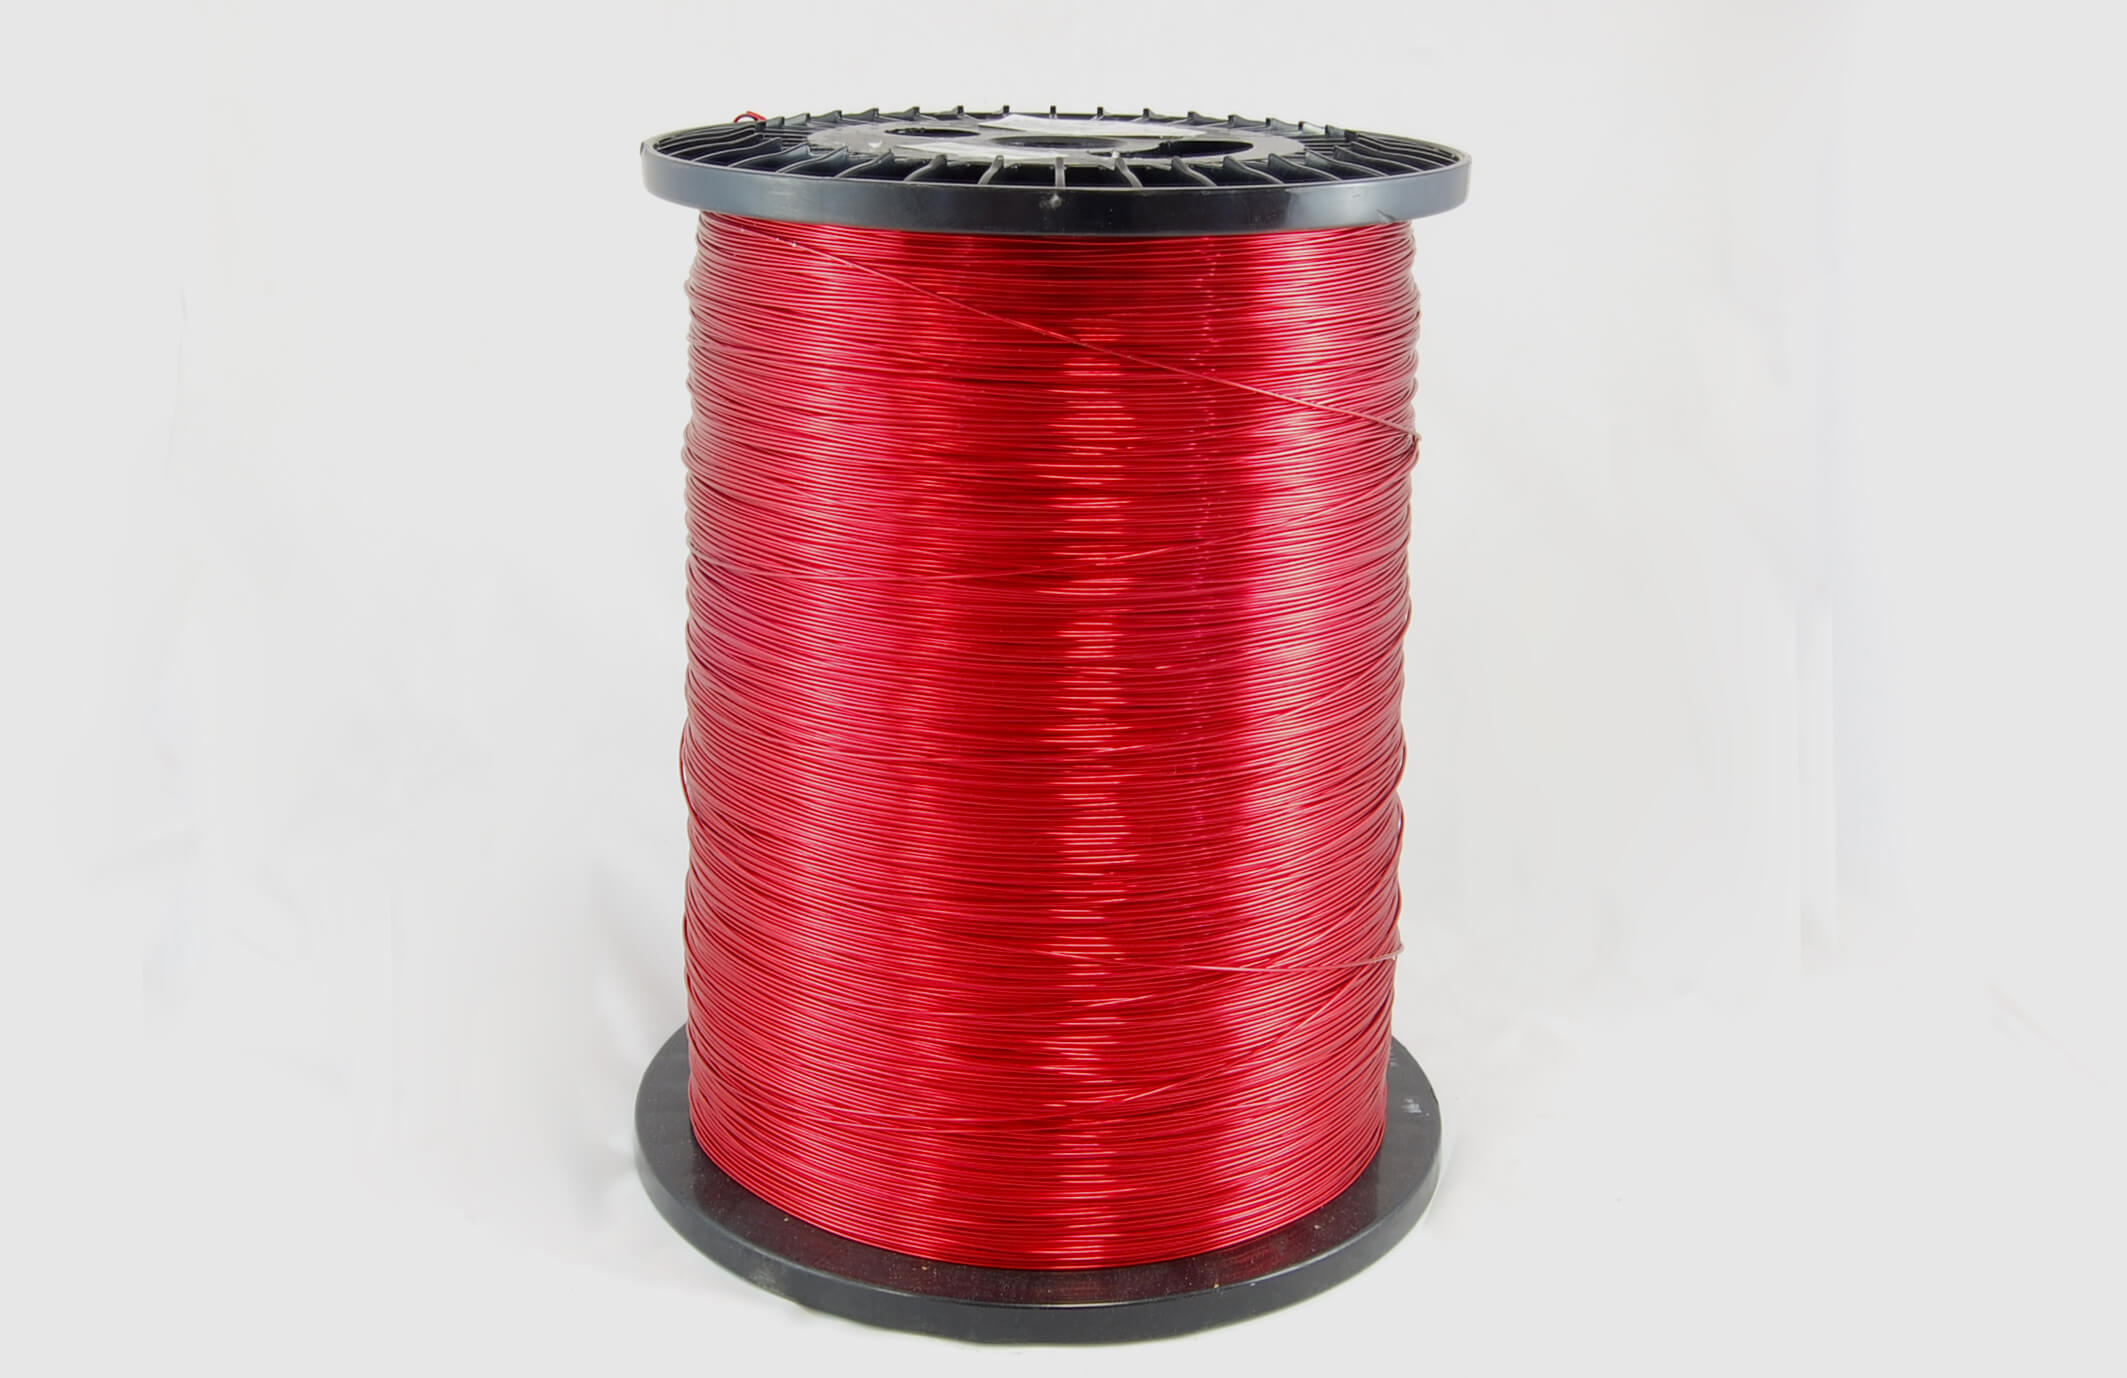 #18 Heavy Nysol  Round HNSR MW 80 Copper Magnet Wire 155°C, red, 85 LB box (average wght.)